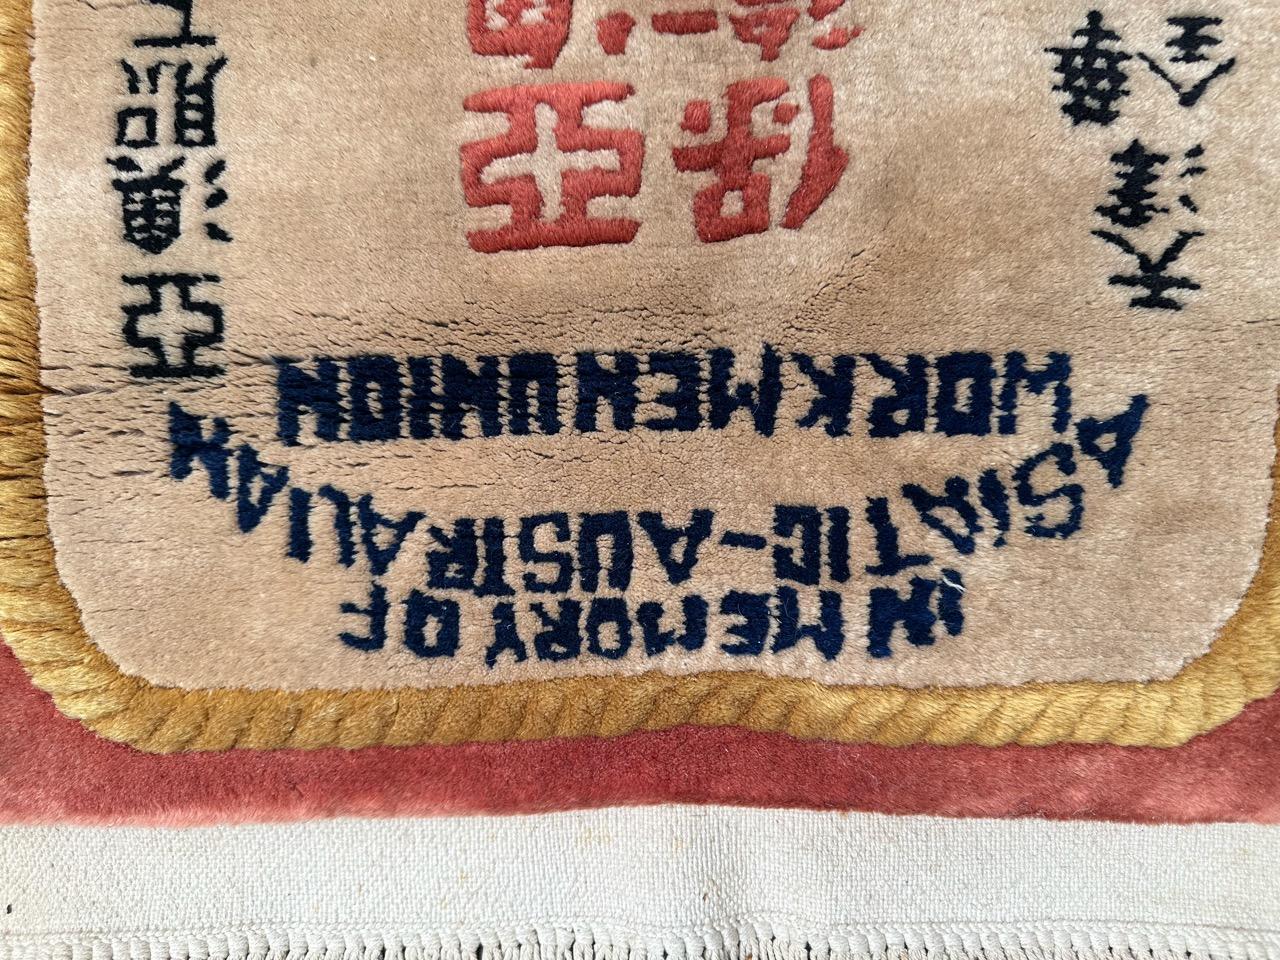 Hübscher Zeugnisteppich aus der Mitte des Jahrhunderts mit Inschriften, die den Zusammenschluss von asiatischen (chinesischen) und australischen Arbeitern zeigen. Vollständig handgeknüpft aus Wolle auf Baumwollgrund. 

✨✨✨
